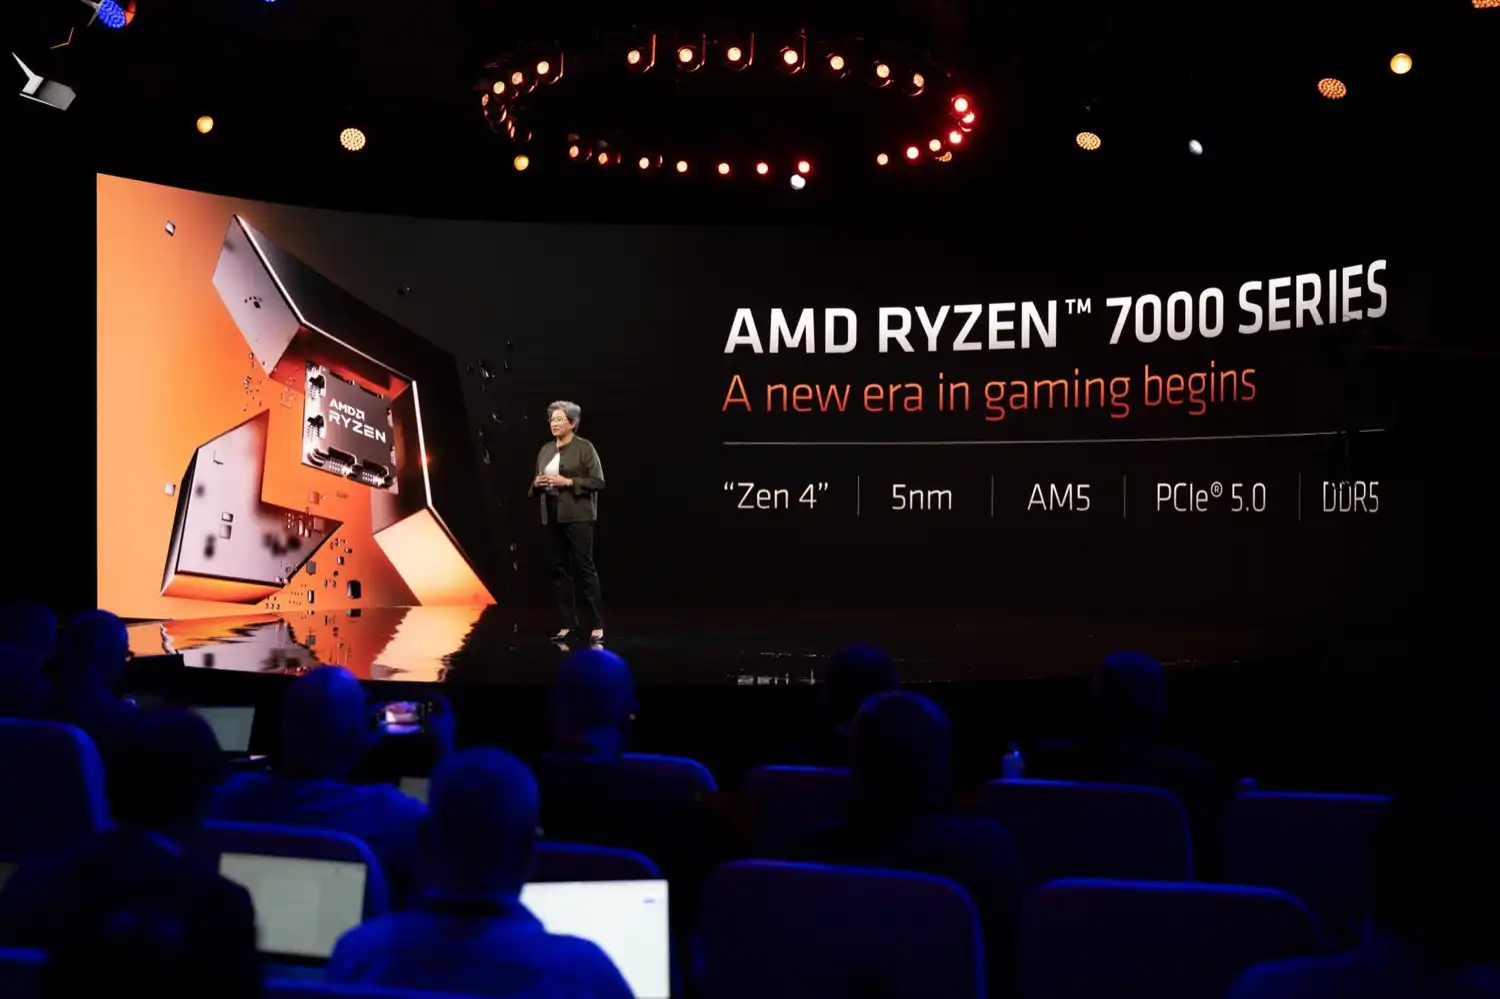 Procesadores AMD Ryzen Serie 7000 con arquitectura "Zen4"